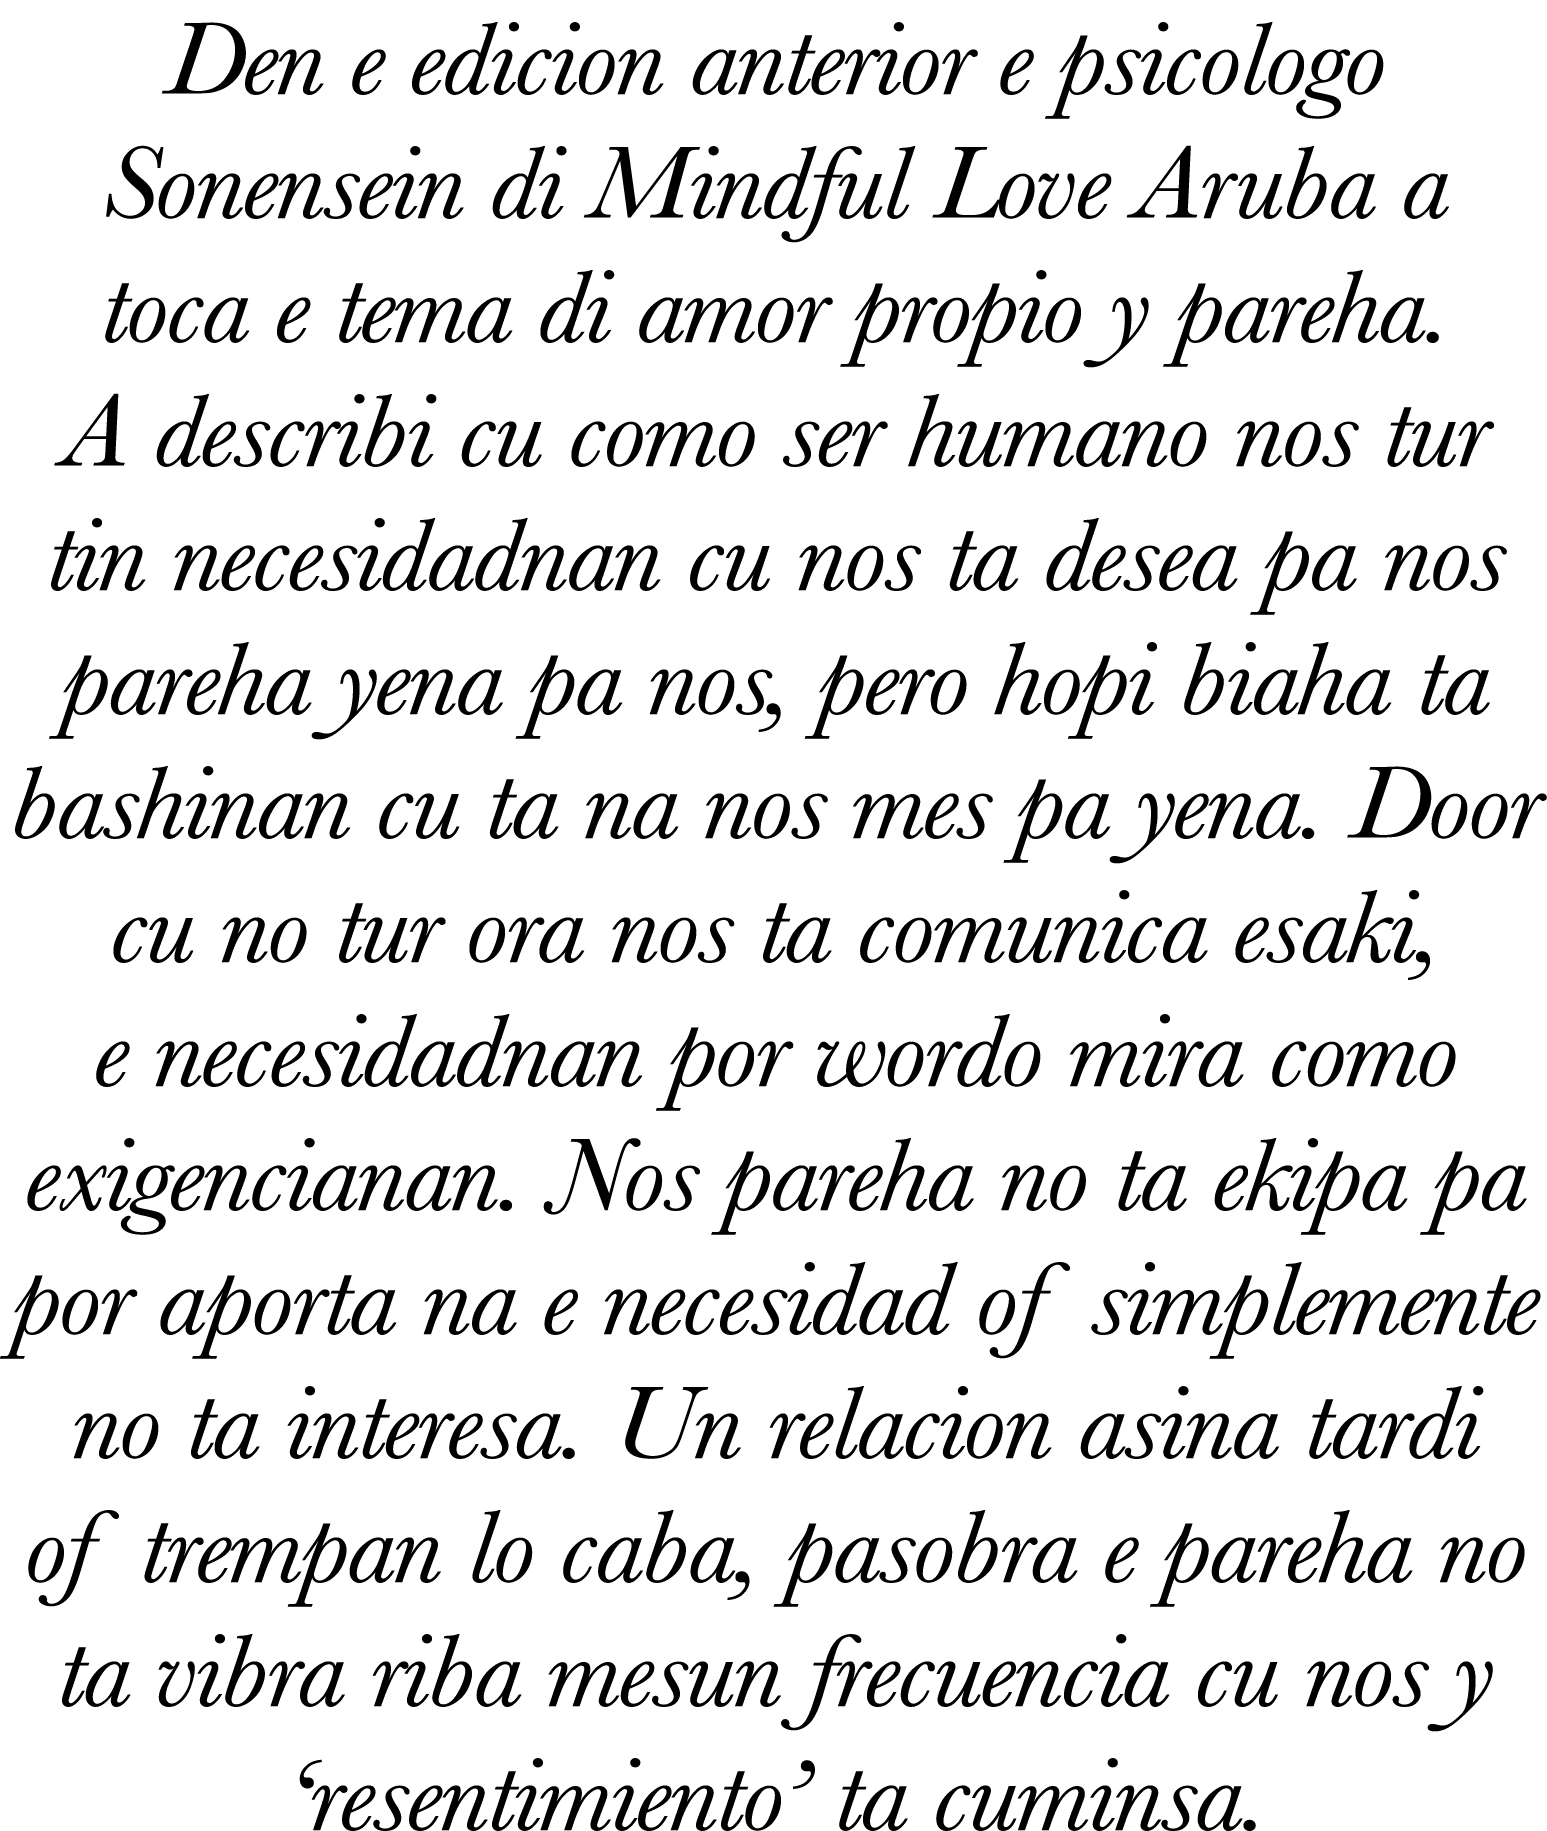 Den e edicion anterior e psicologo Sonensein di Mindful Love Aruba a toca e tema di amor propio y pareha. A describi ...